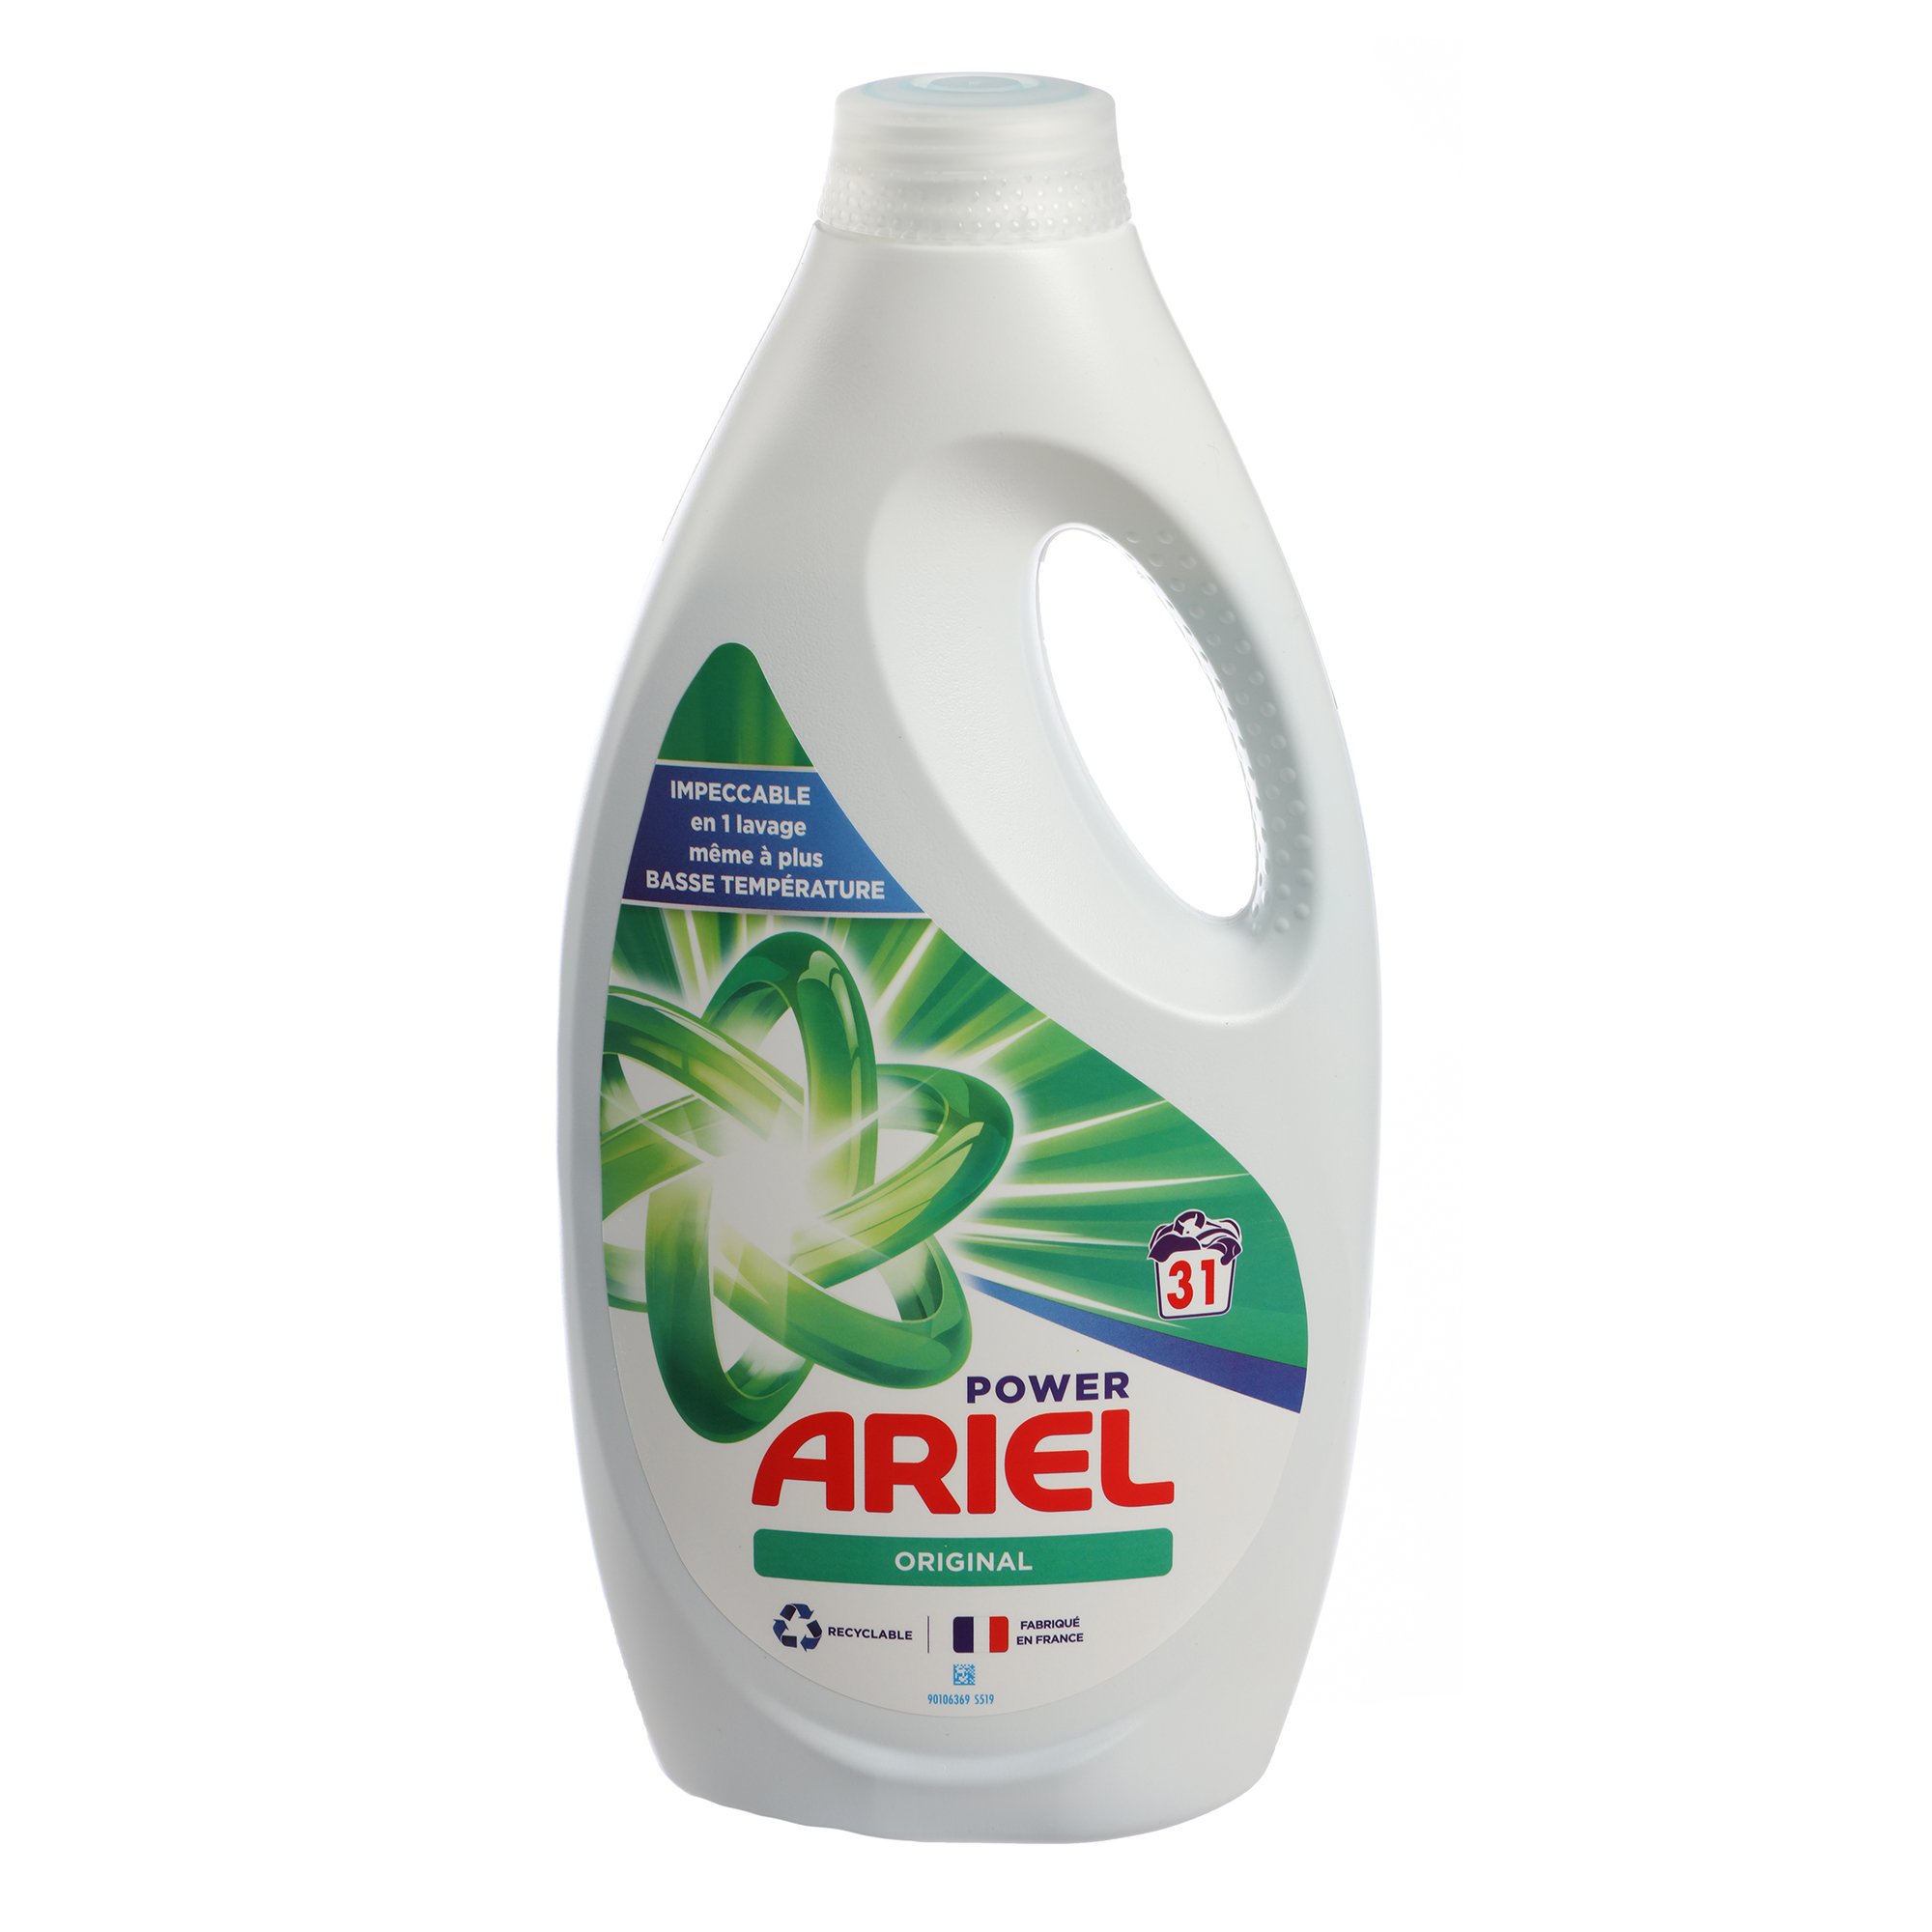 Lot de 2x31 doses de lessive liquide Power Ariel Original ARIEL